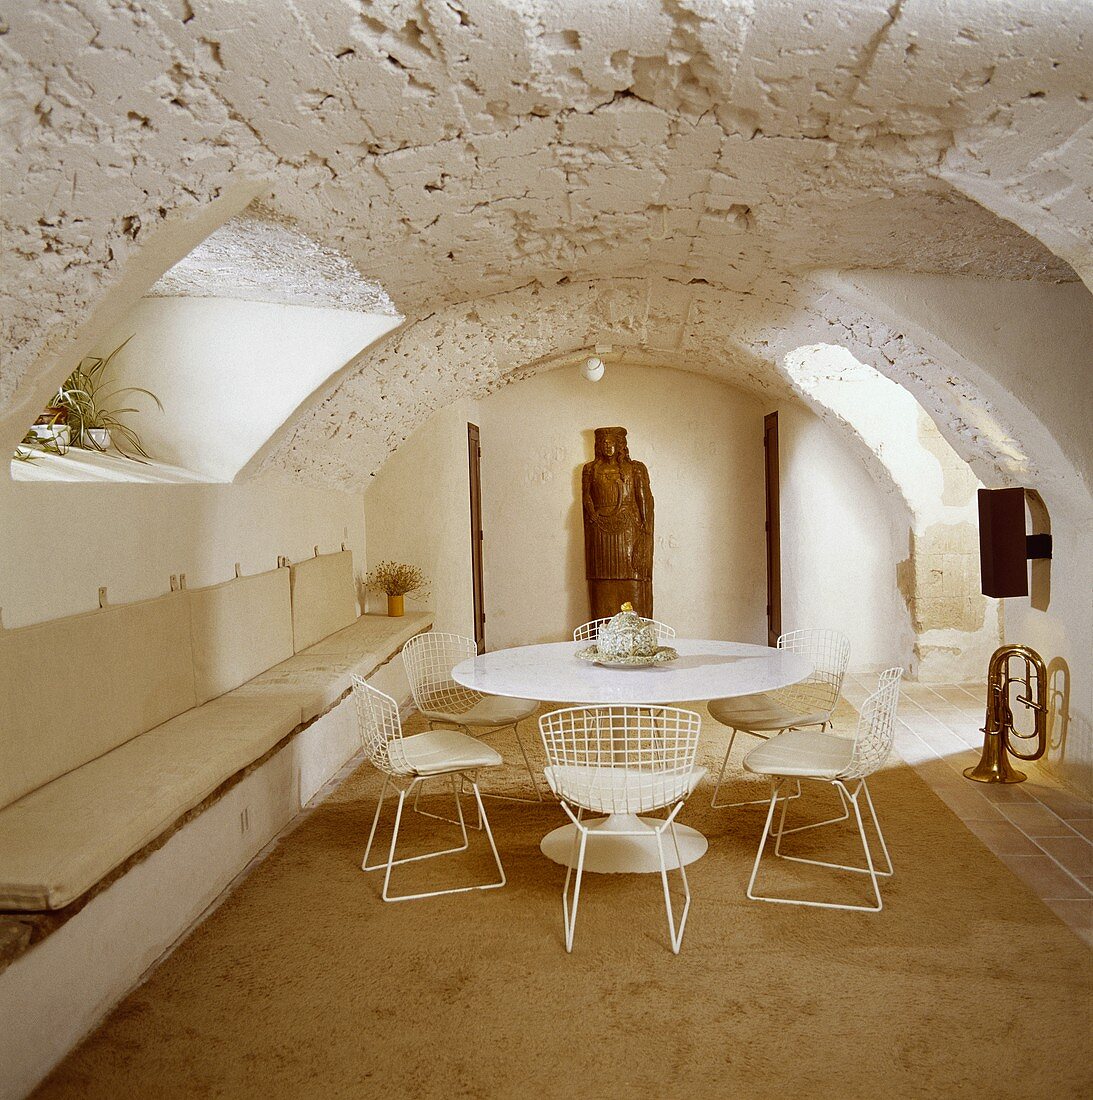 weiße Saarinen-Tisch, Eames-Stühle und Sitzbänke in einem Esszimmer im Keller mit rauer Steindecke